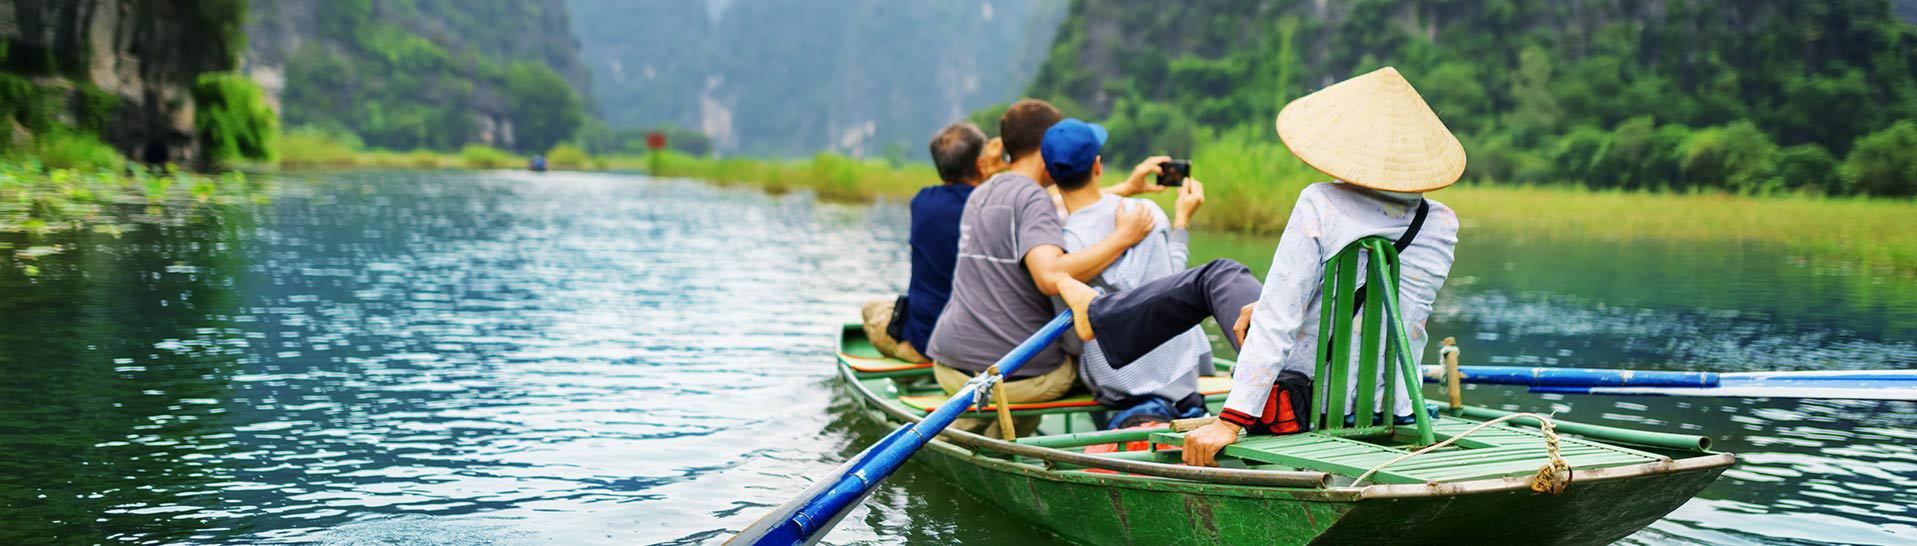 Zdjęcie przedstawiające trzech mężczyzn robiących sobie zdjęcia na łódce w azjatyckim kraju